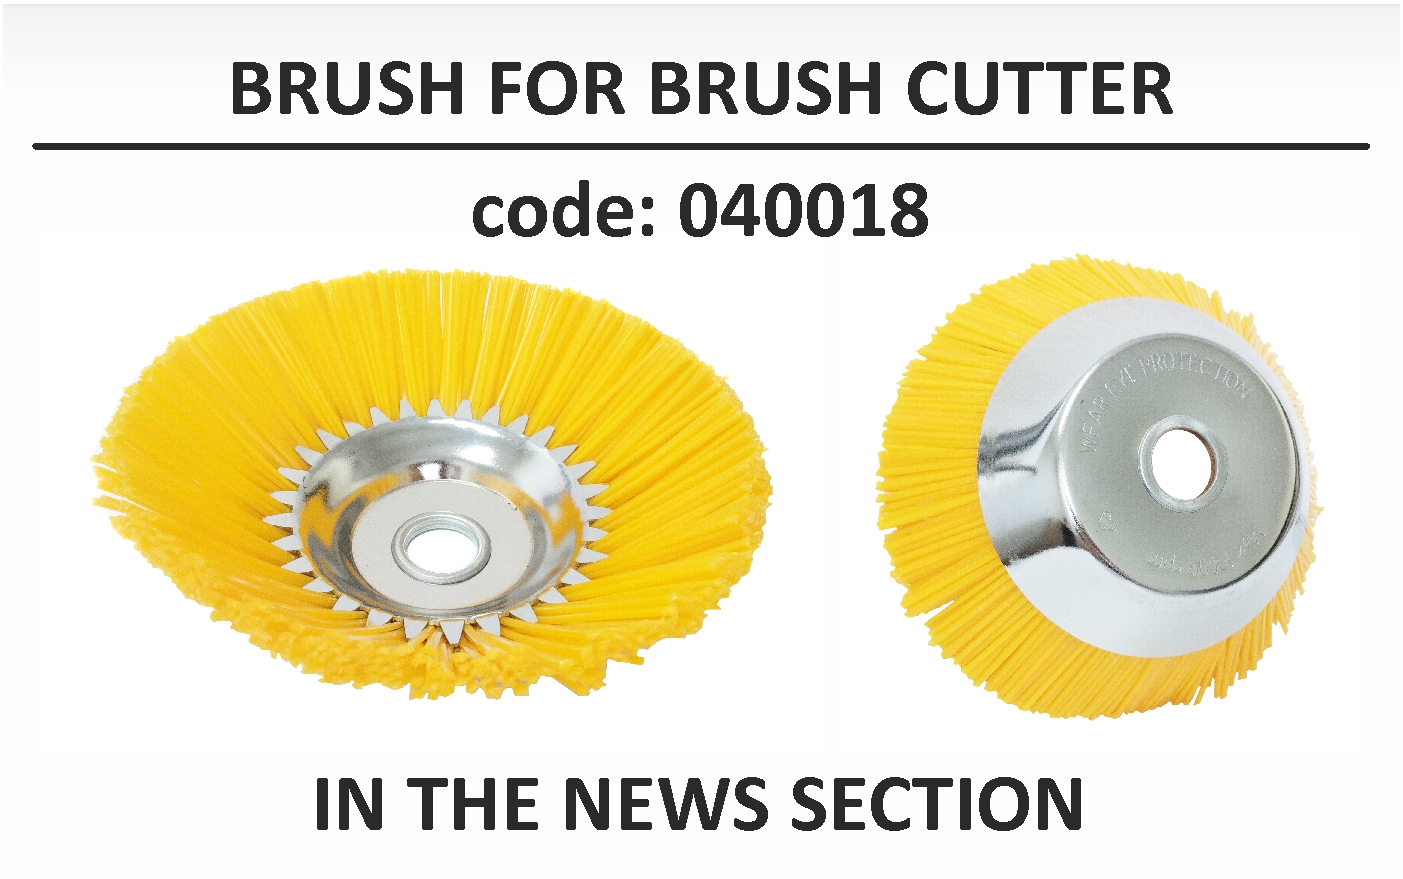 Brush for brush cutter - nylon